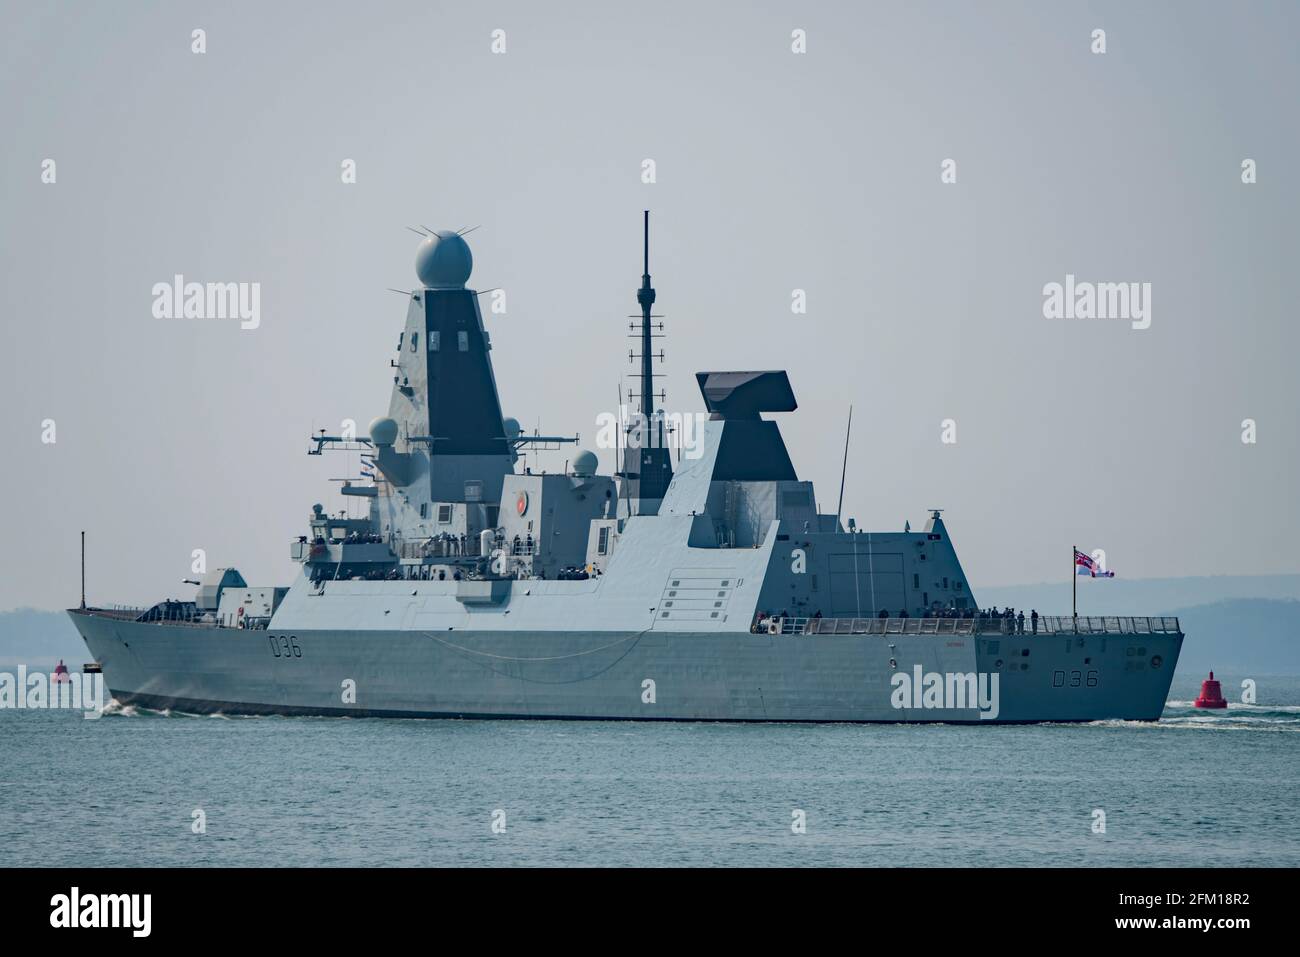 Le destructeur HMS Defender de type 45 de la Royal Navy a quitté Portsmouth (Royaume-Uni) le 1/5/2021 dans le cadre du Carrier Strike Group du Royaume-Uni déployé dans l'Indo-Pacifique. Banque D'Images